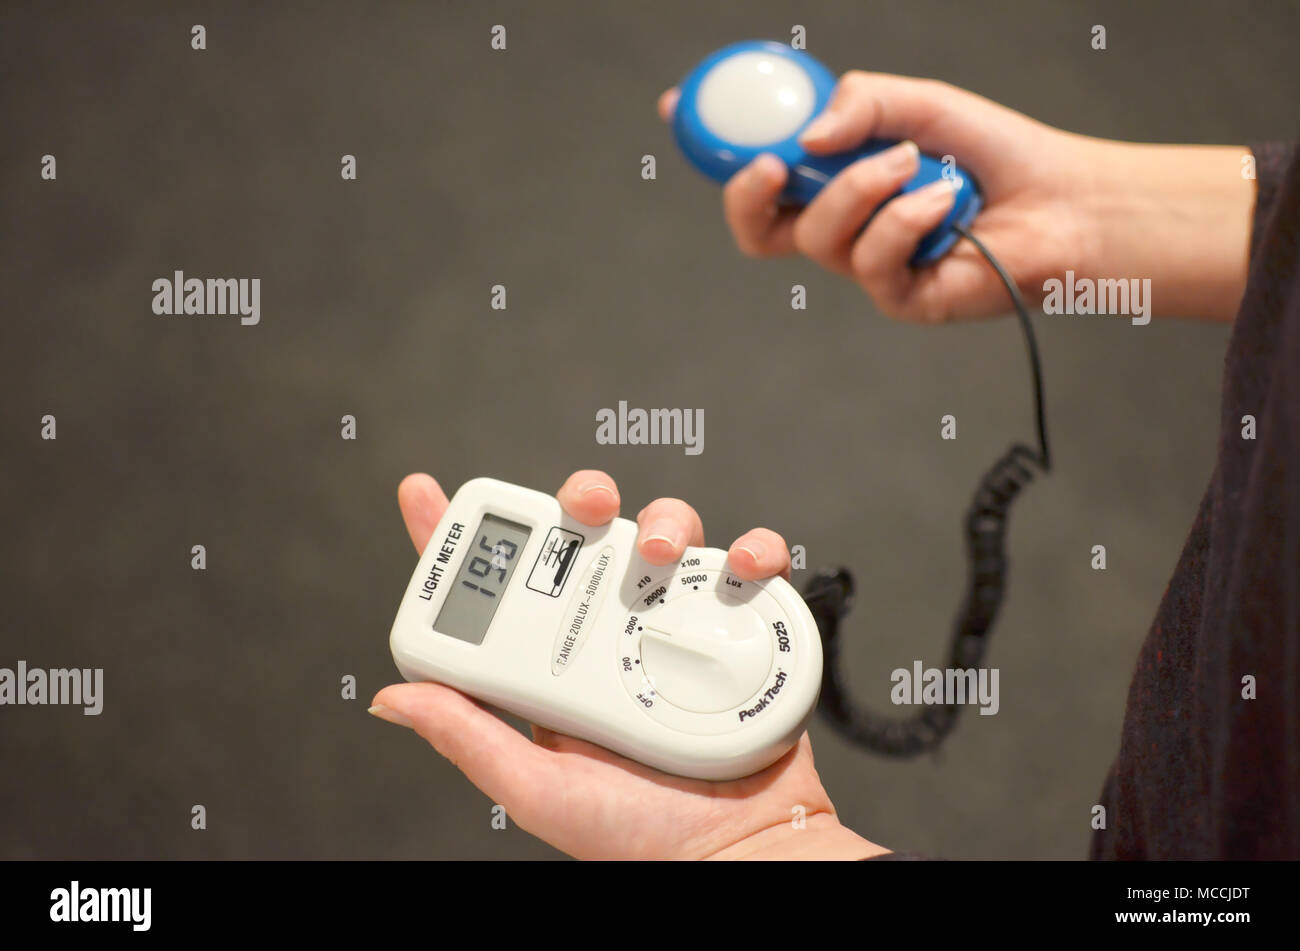 Lux meter für die Messung der Lichtintensität in Hand mit Fotodiode LDR  Photometer elektronischer Geräte Gerät Stockfotografie - Alamy